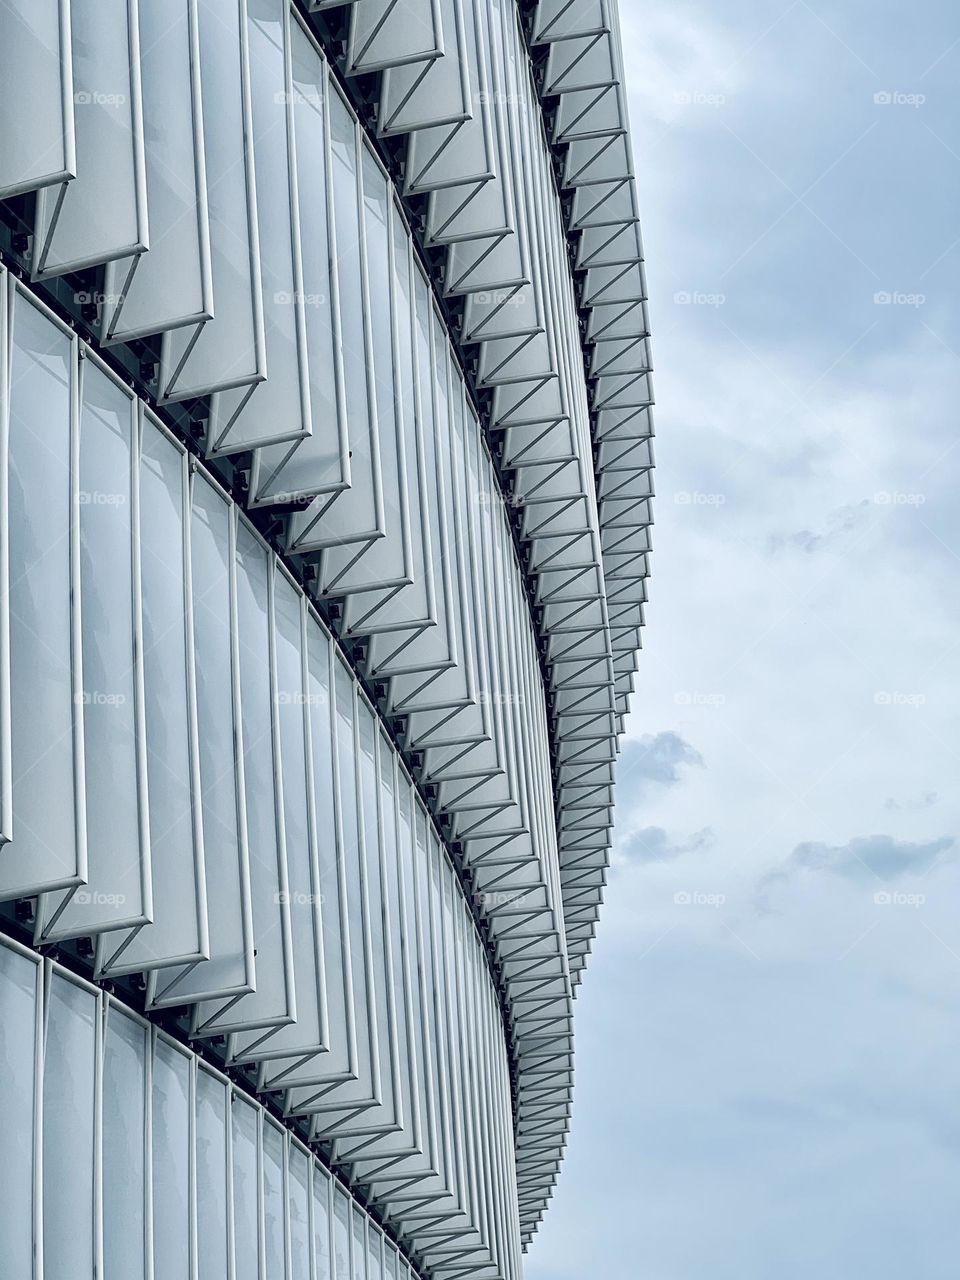 Stadium architecture 